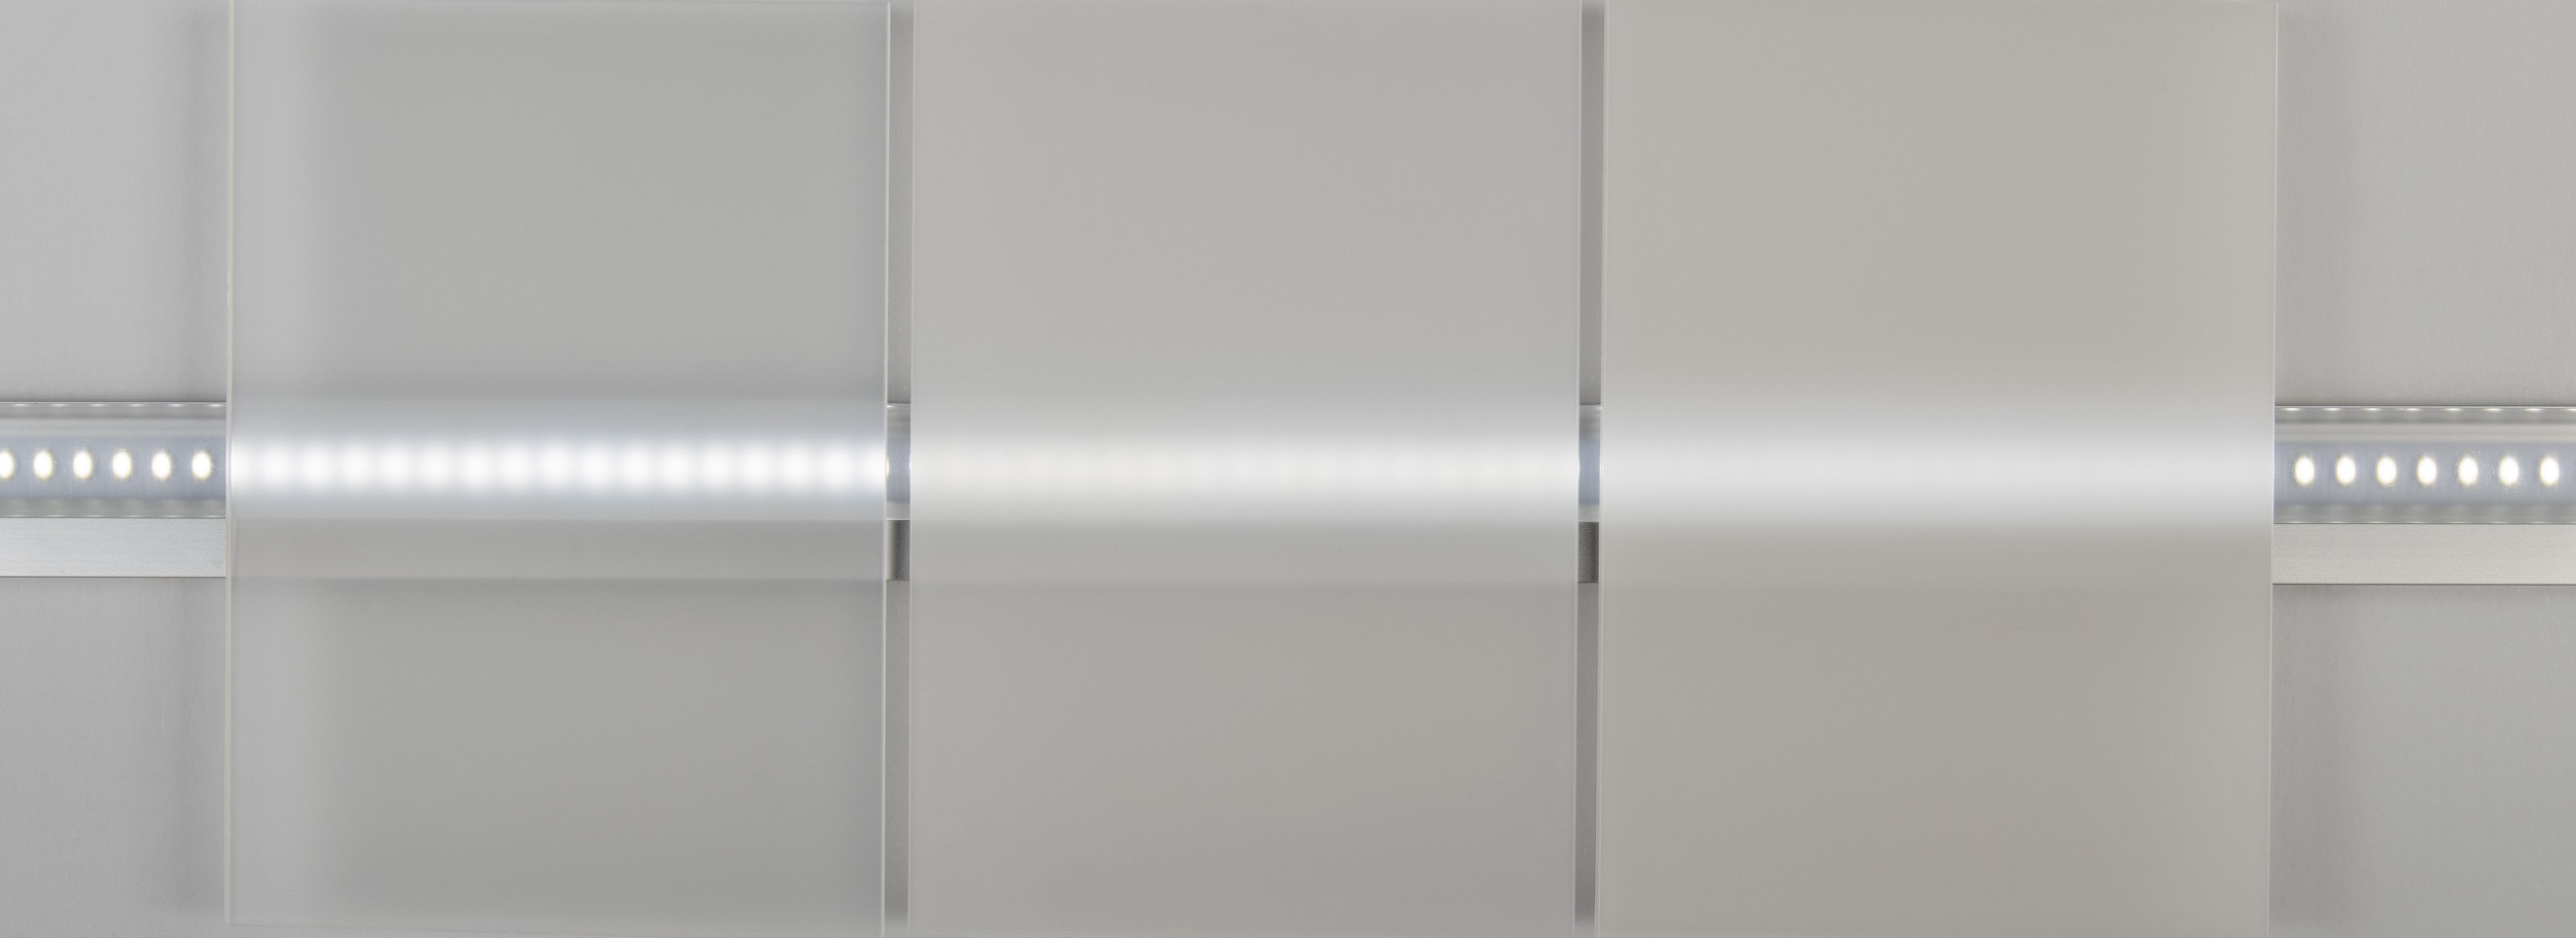 Diffusorfolie 60% selbstkl., Rund/Eckig, Folie für LED Panel, Lichtstreufolie